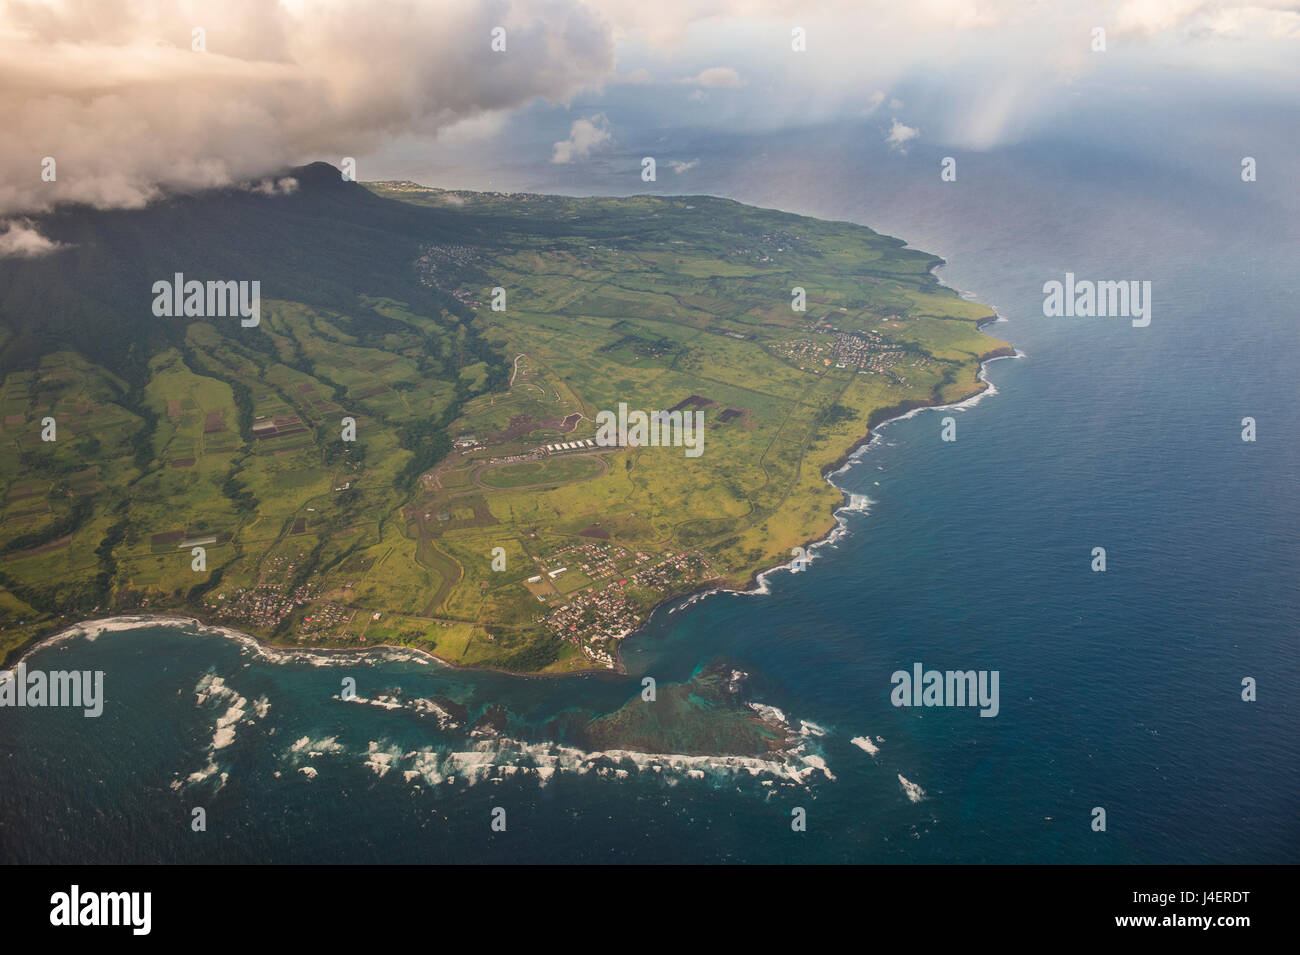 Vue aérienne de Saint Kitts, Saint Kitts et Nevis, Antilles, Caraïbes, Amérique Centrale Banque D'Images